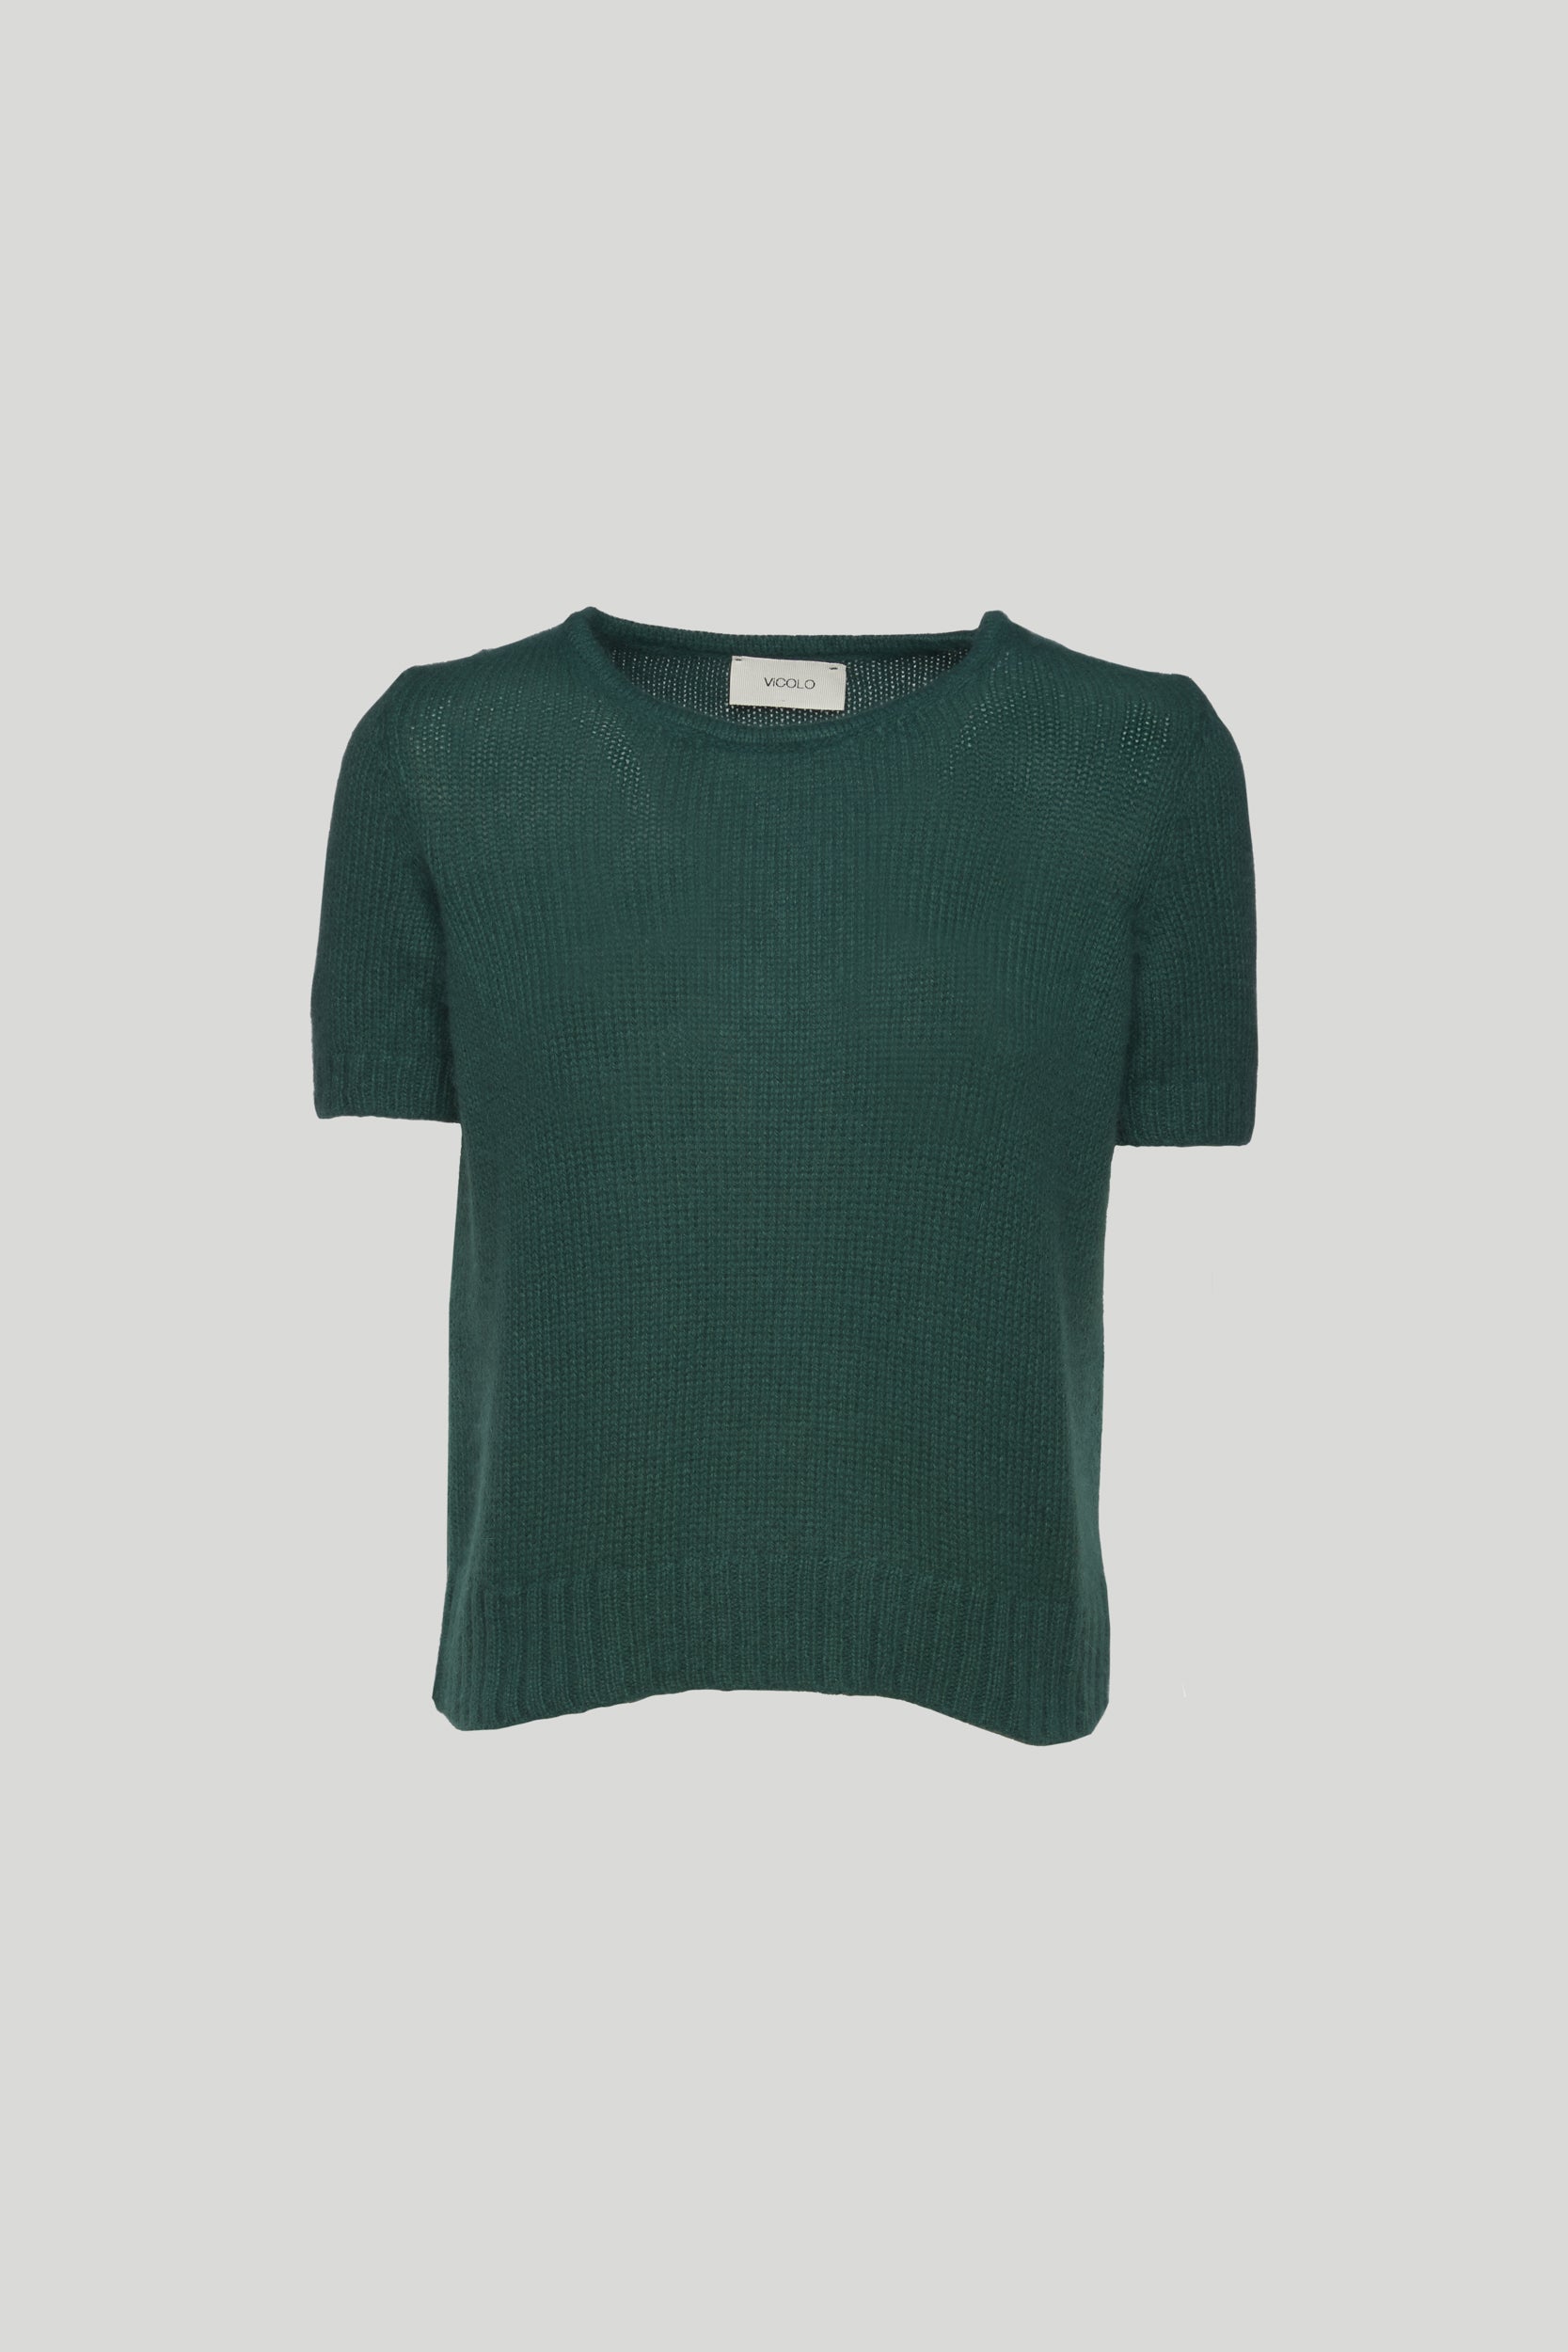 VICOLO Green Shirt Short Sleeves